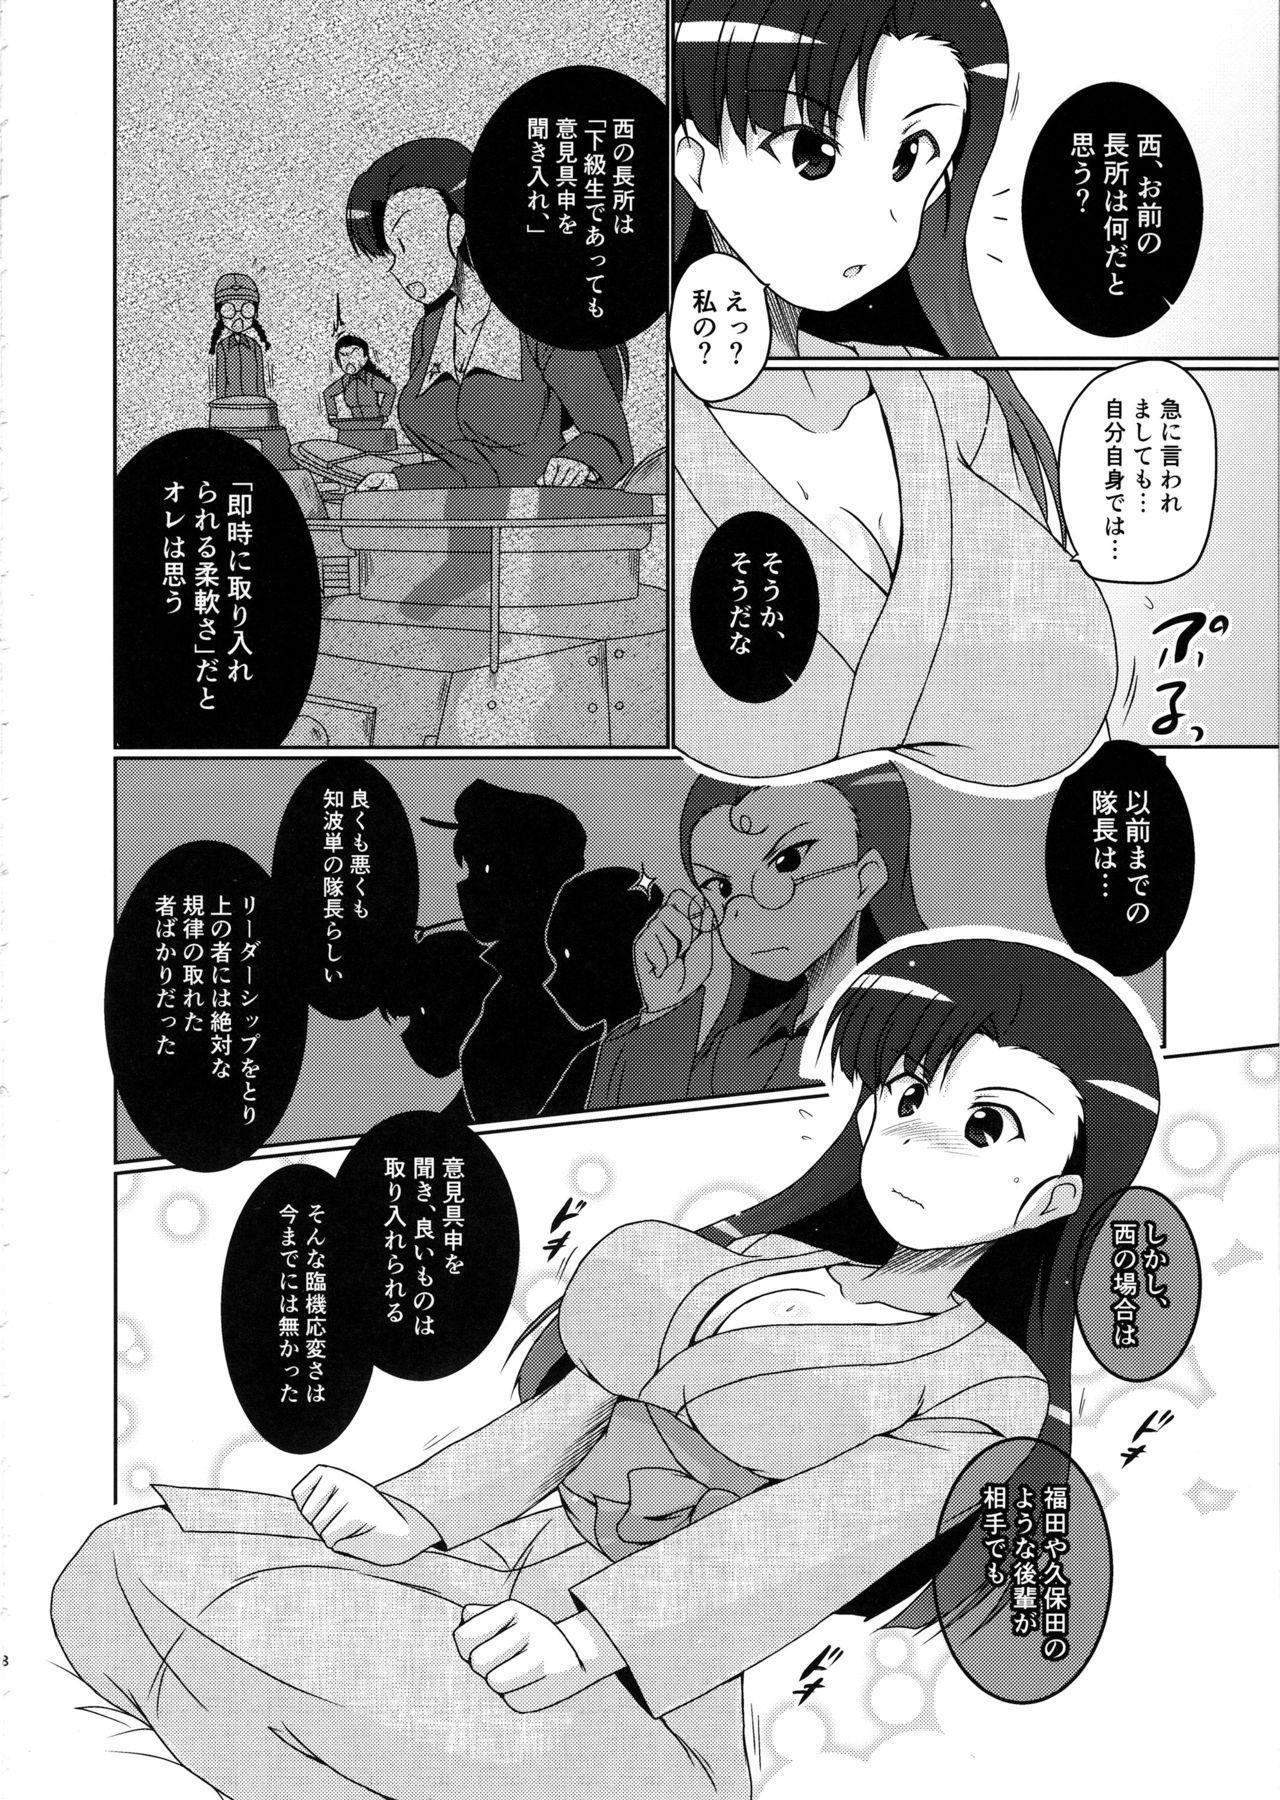  Nishi Taichou to Yoru no Senjutsu Tokkun desu! - Girls und panzer Blows - Page 7